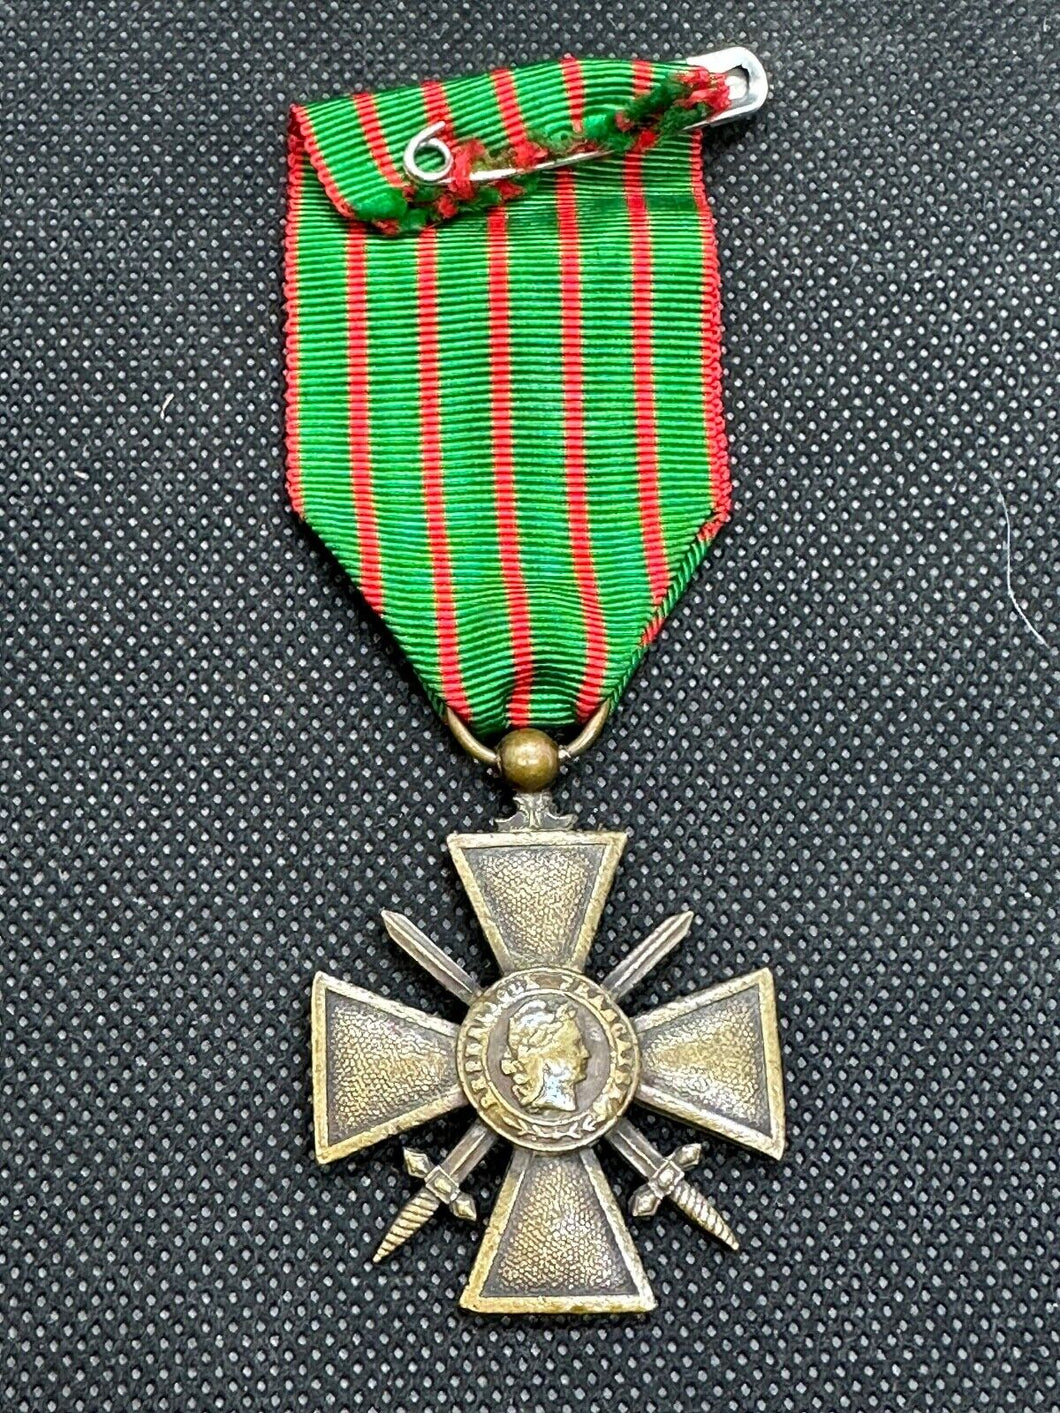 Original WW1 French Army Croix de Guerre Medal - 1914-1917